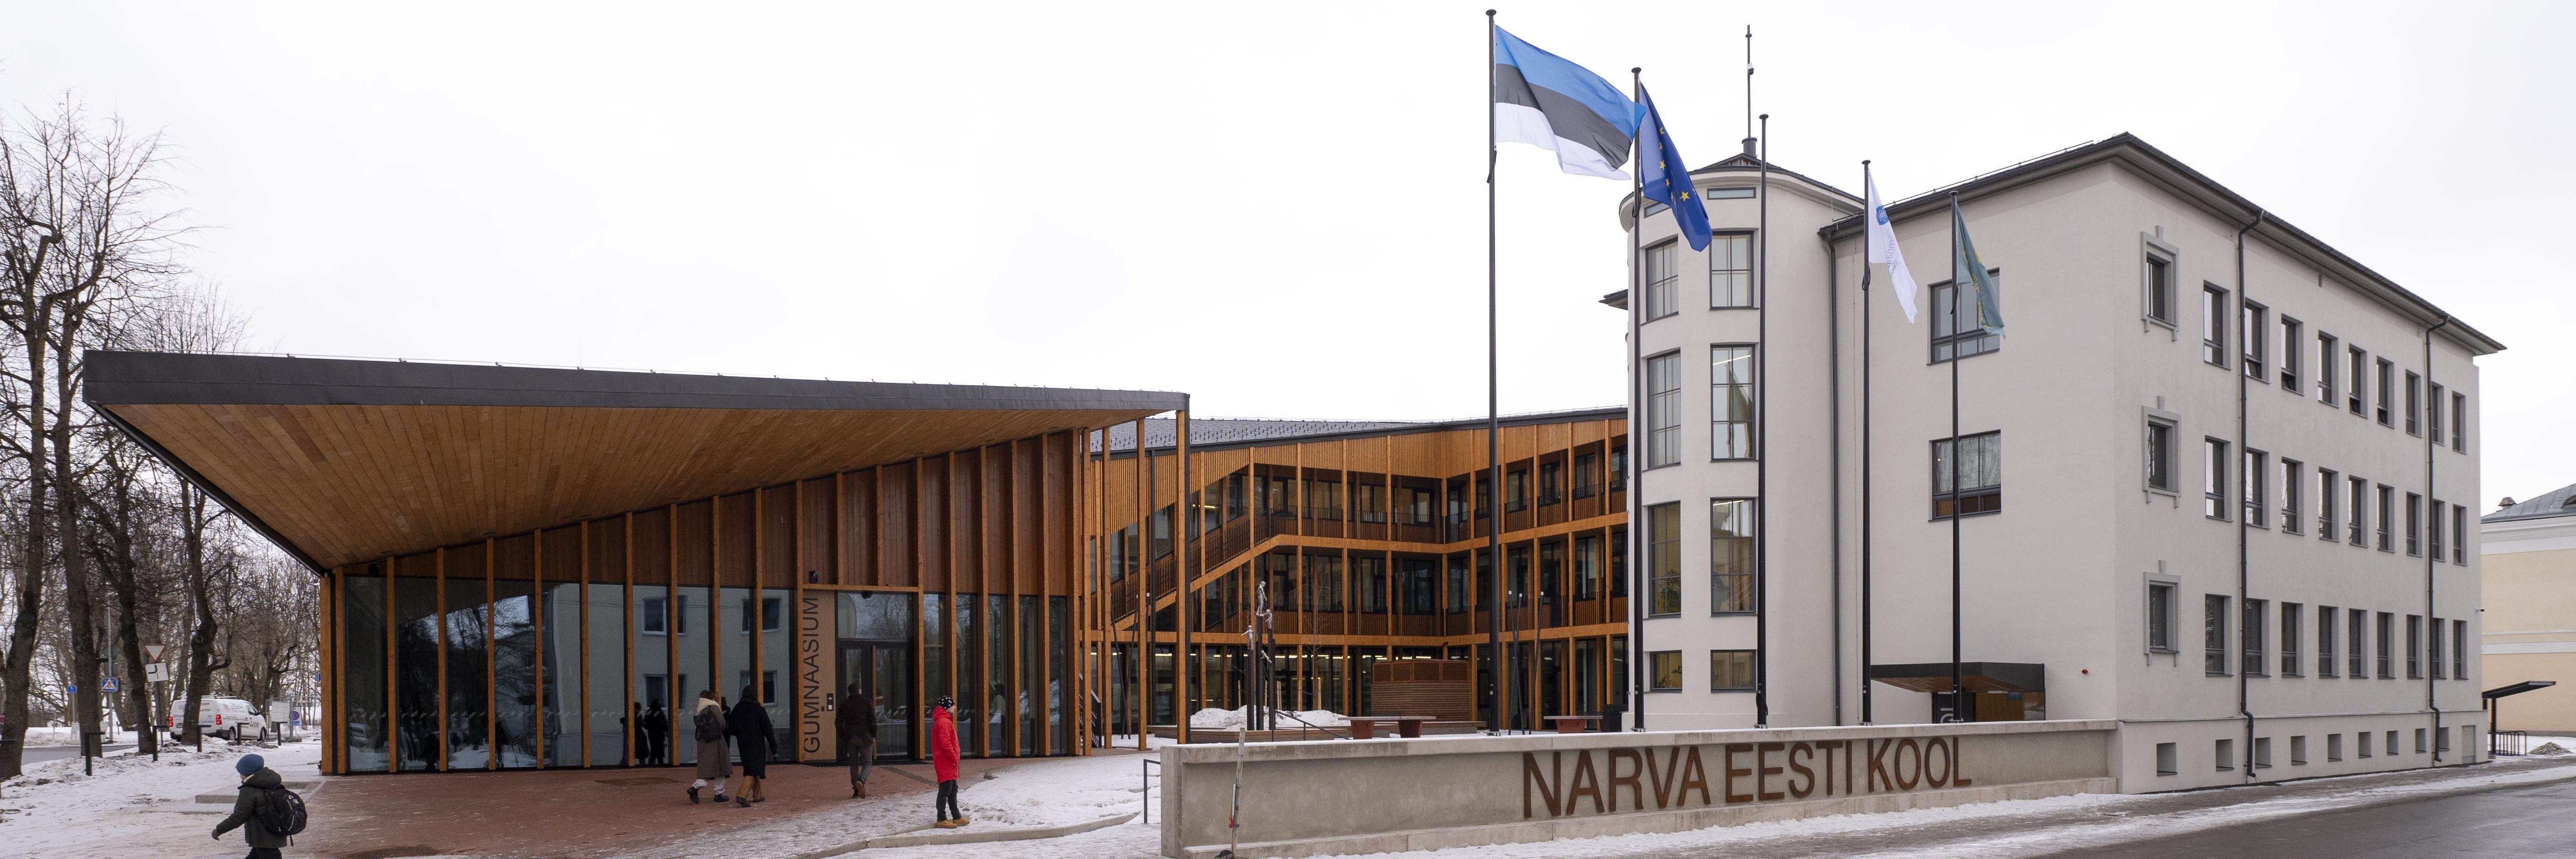 Narva Eesti gümnaasiumi ja põhikooli avamine. Foto: Marko Mumm